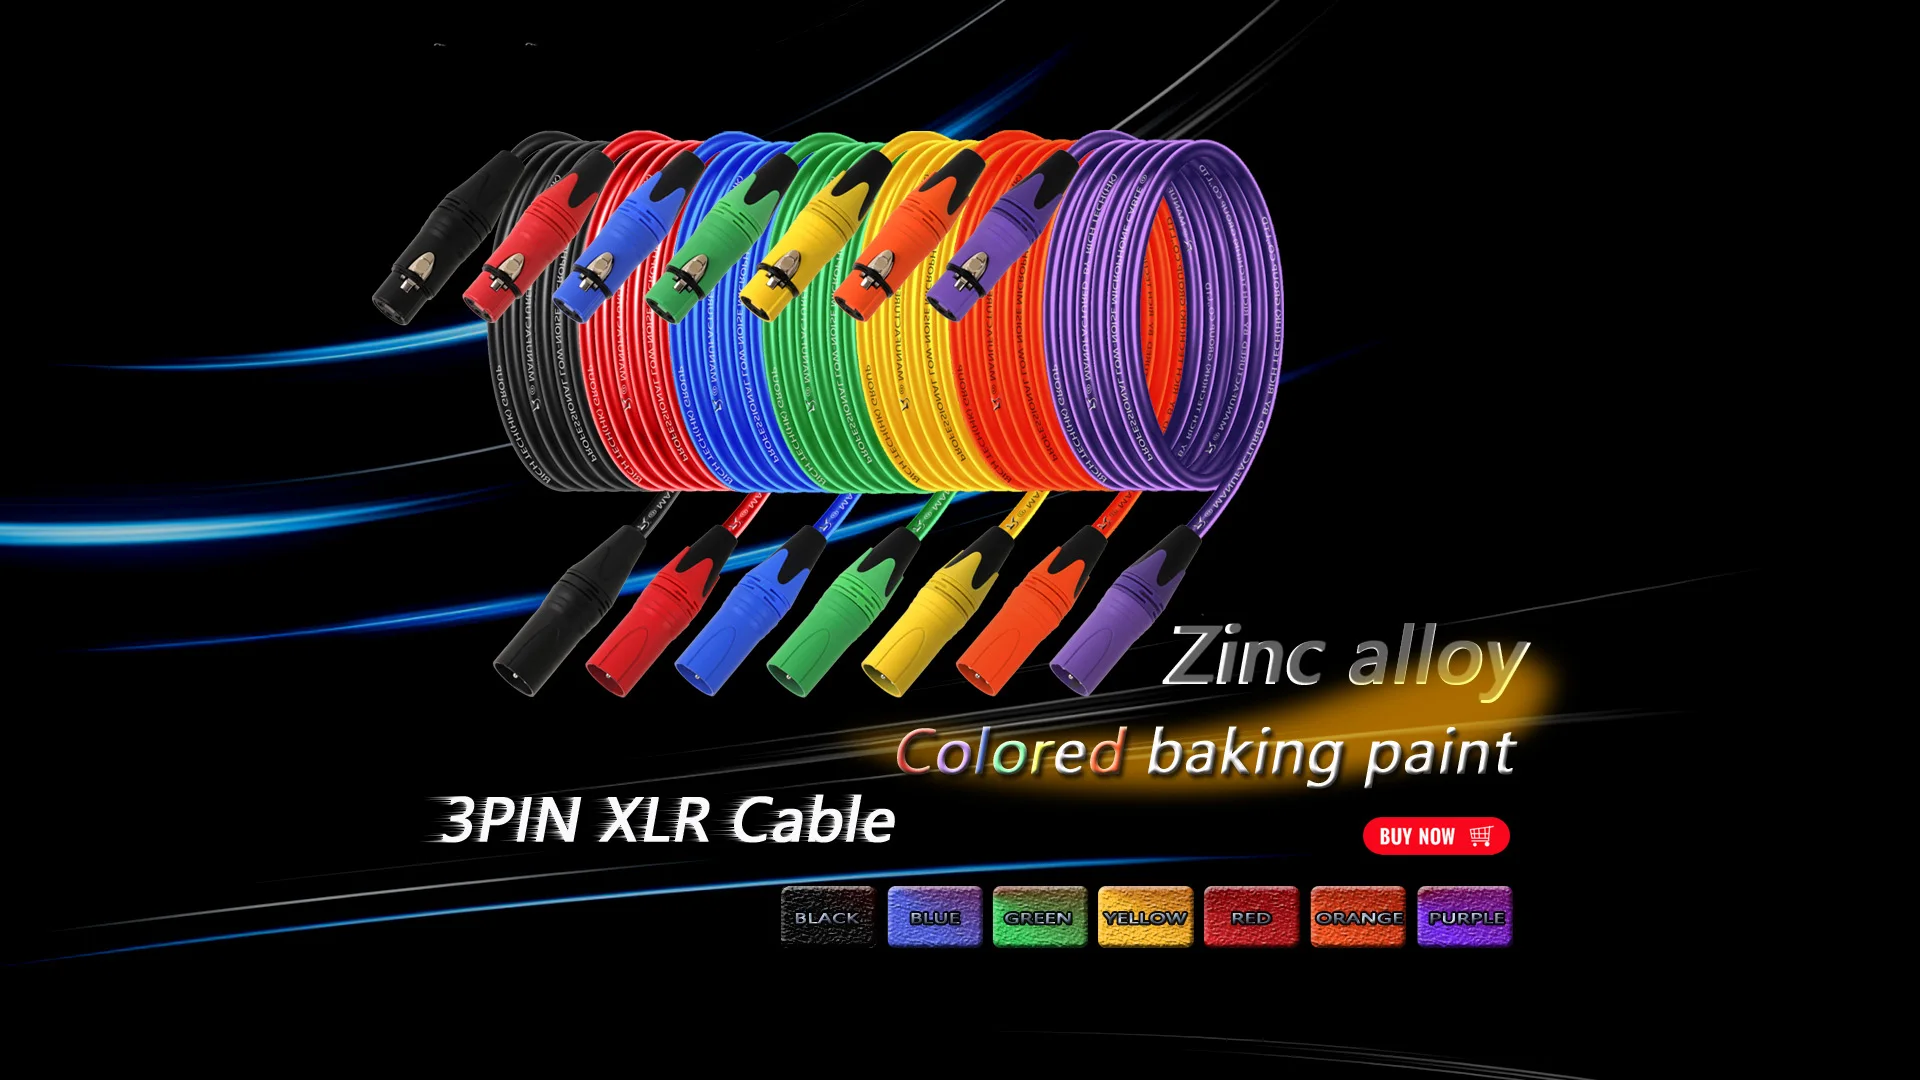 S83535b8d6cd24c6783e4f6ed9beadeb12 1PC 3Pin XLR Cable Male to Female Plastic Plug OFC Copper Shielded For Mixer Microphone Amplifier 0.3m 1m 2m 3m 5m 8m 10m 15m